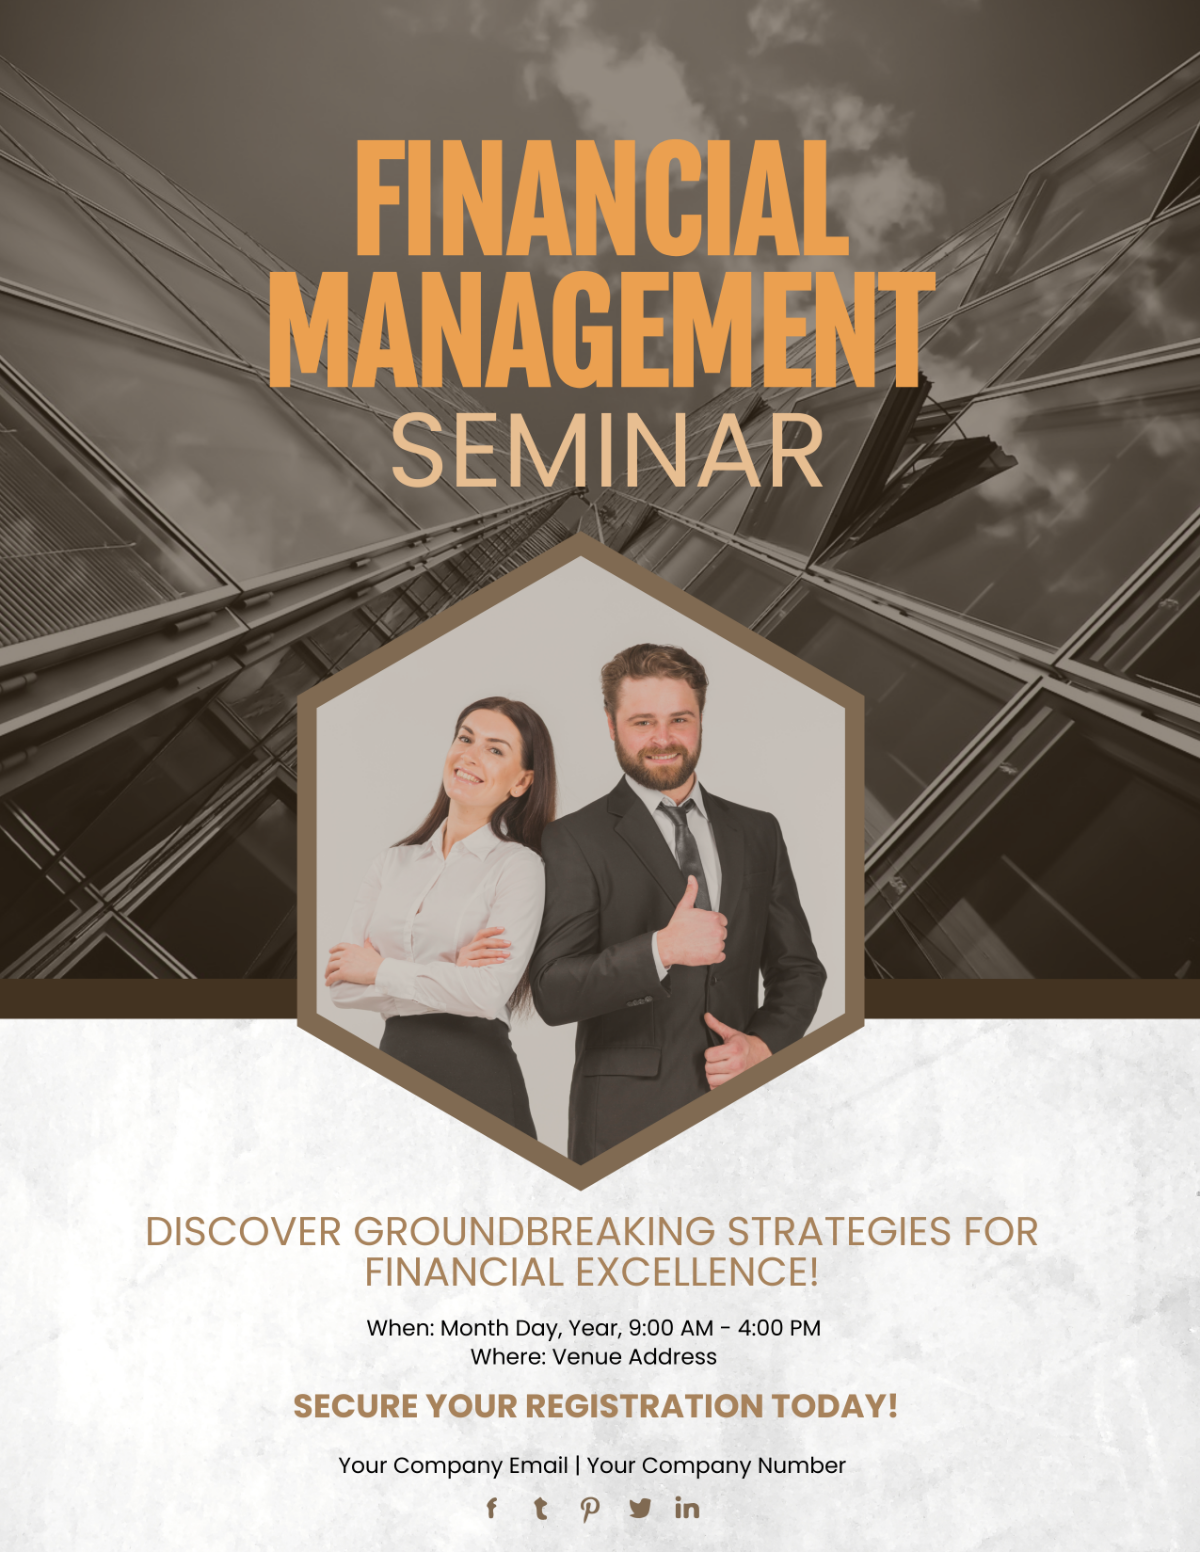 Financial Management Seminar Flyer